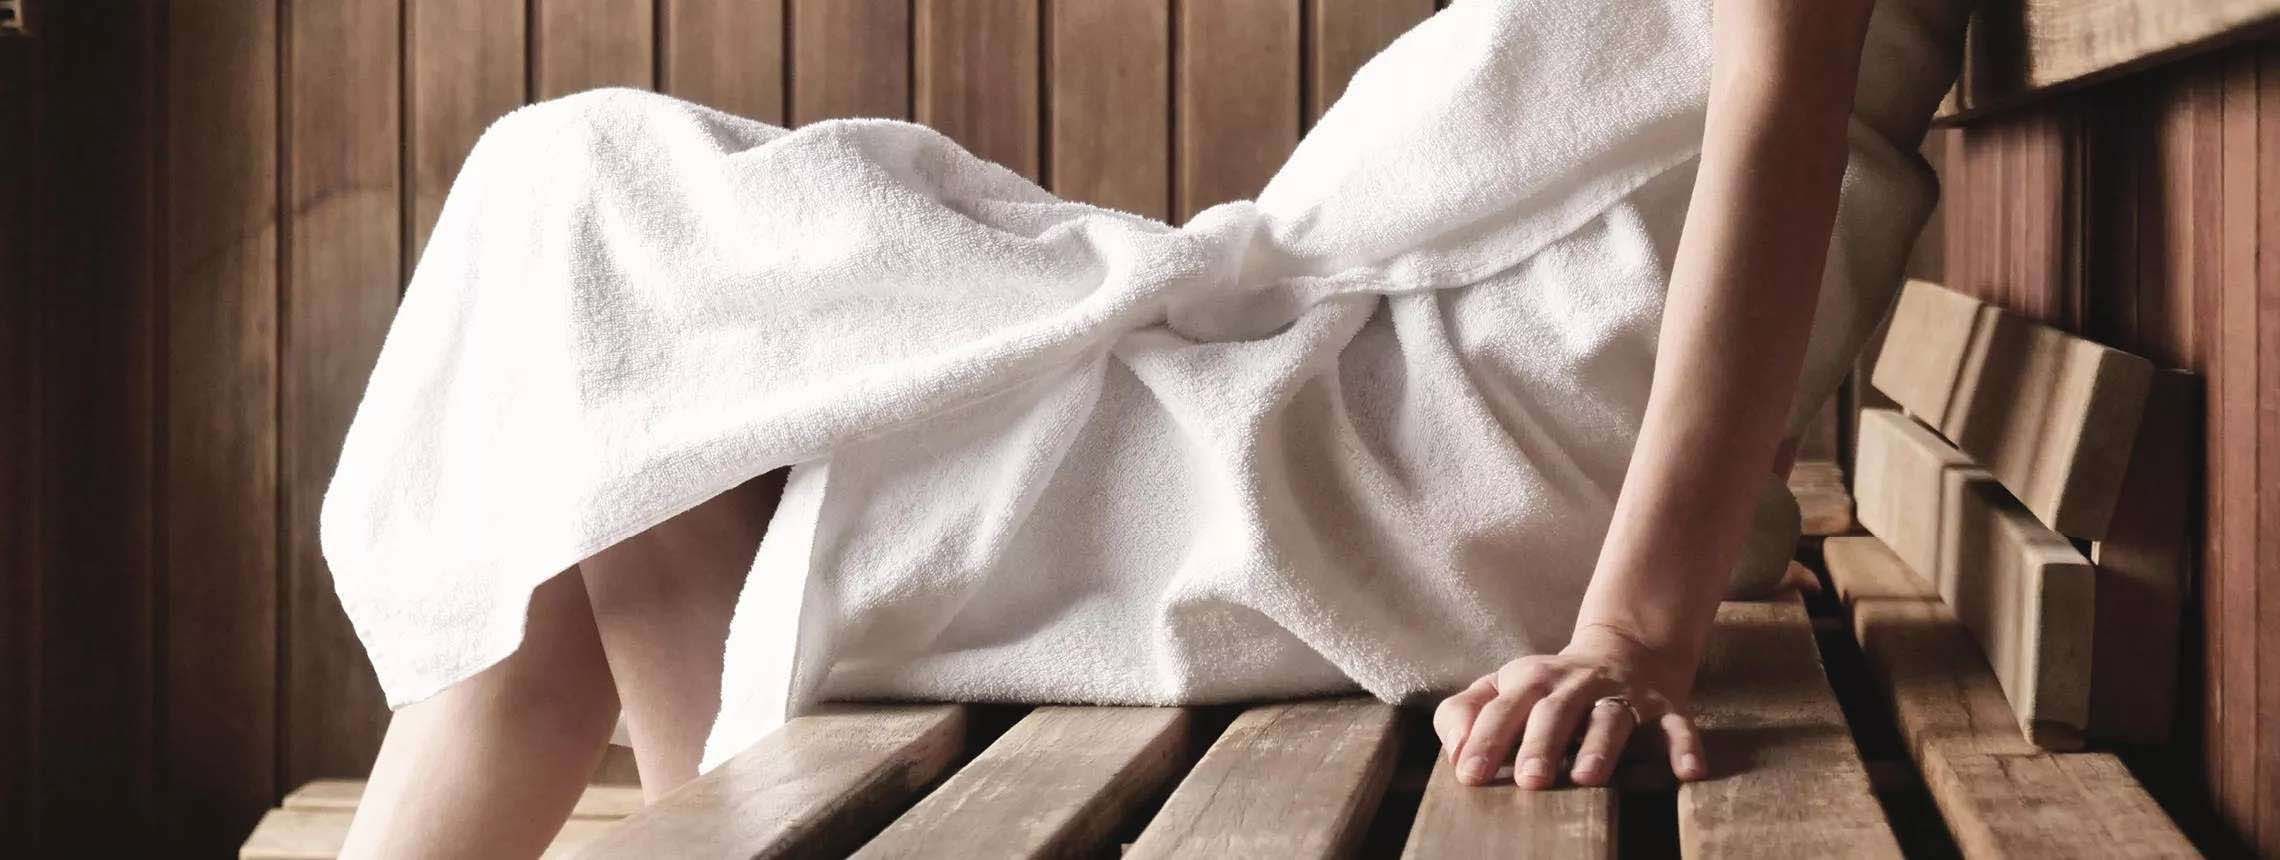 Schuppenflechte und Sauna: Passt das zusammen? | Psoriasis Info